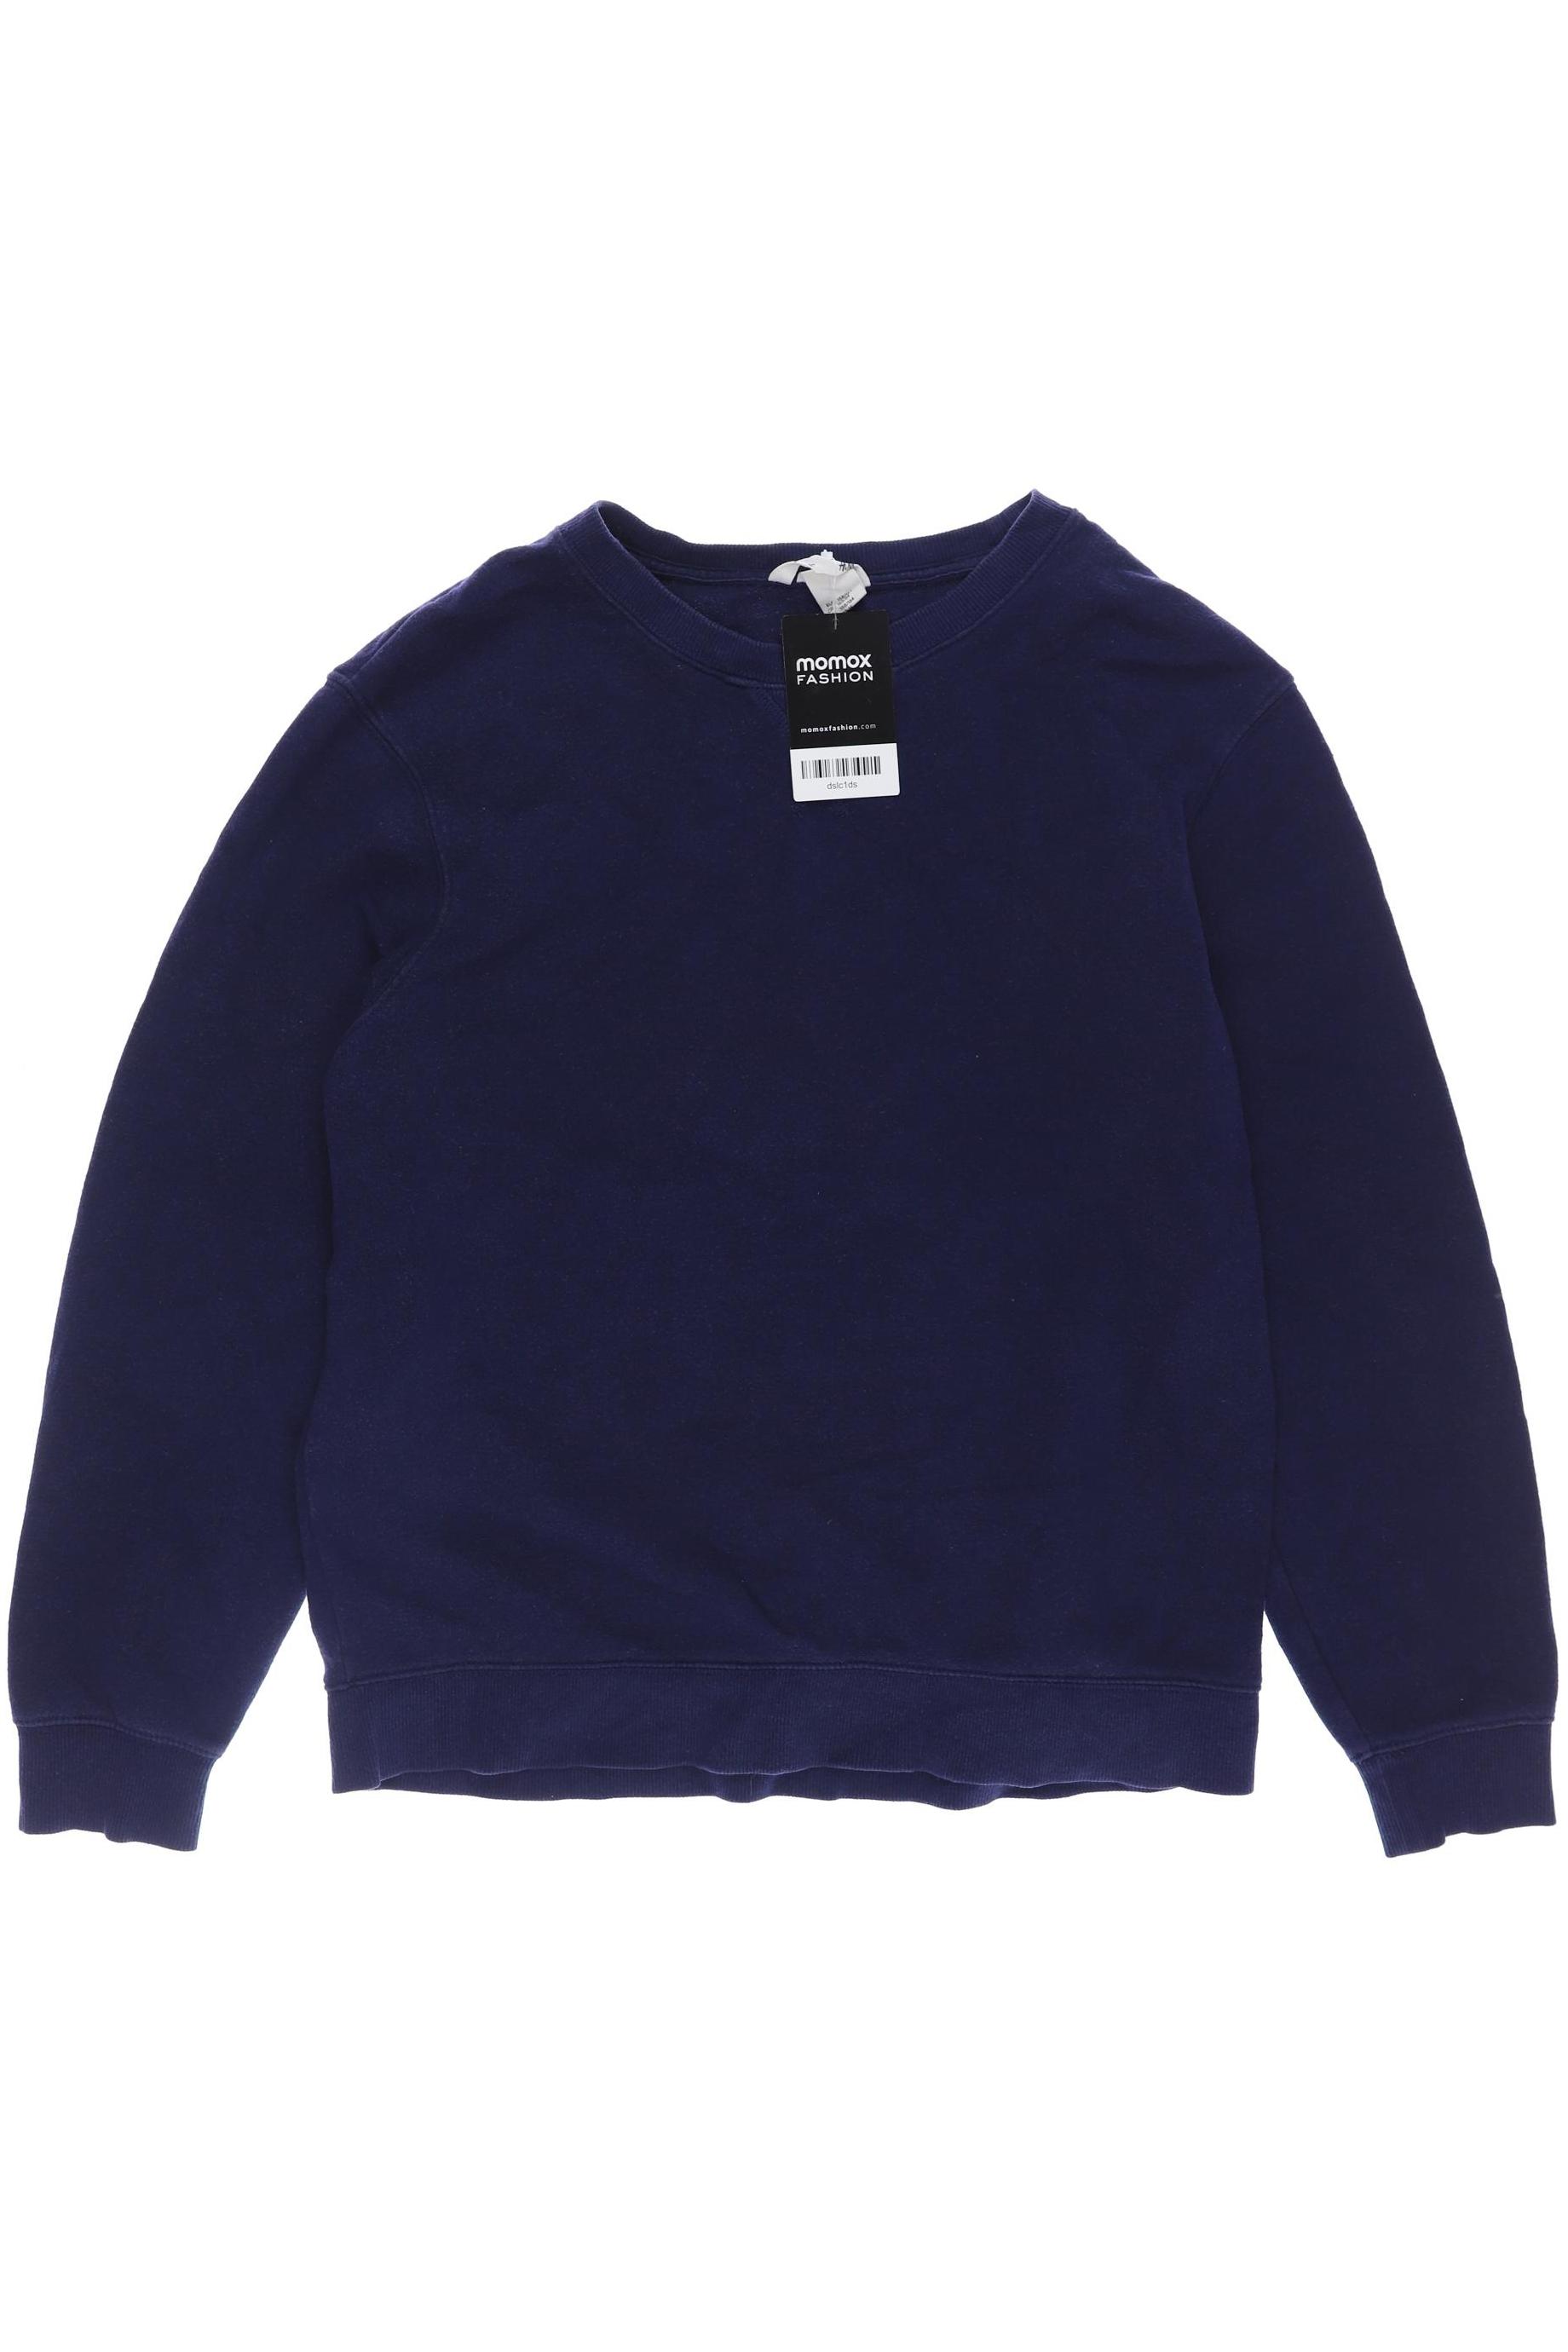 H&M Herren Hoodies & Sweater, marineblau, Gr. 158 von H&M